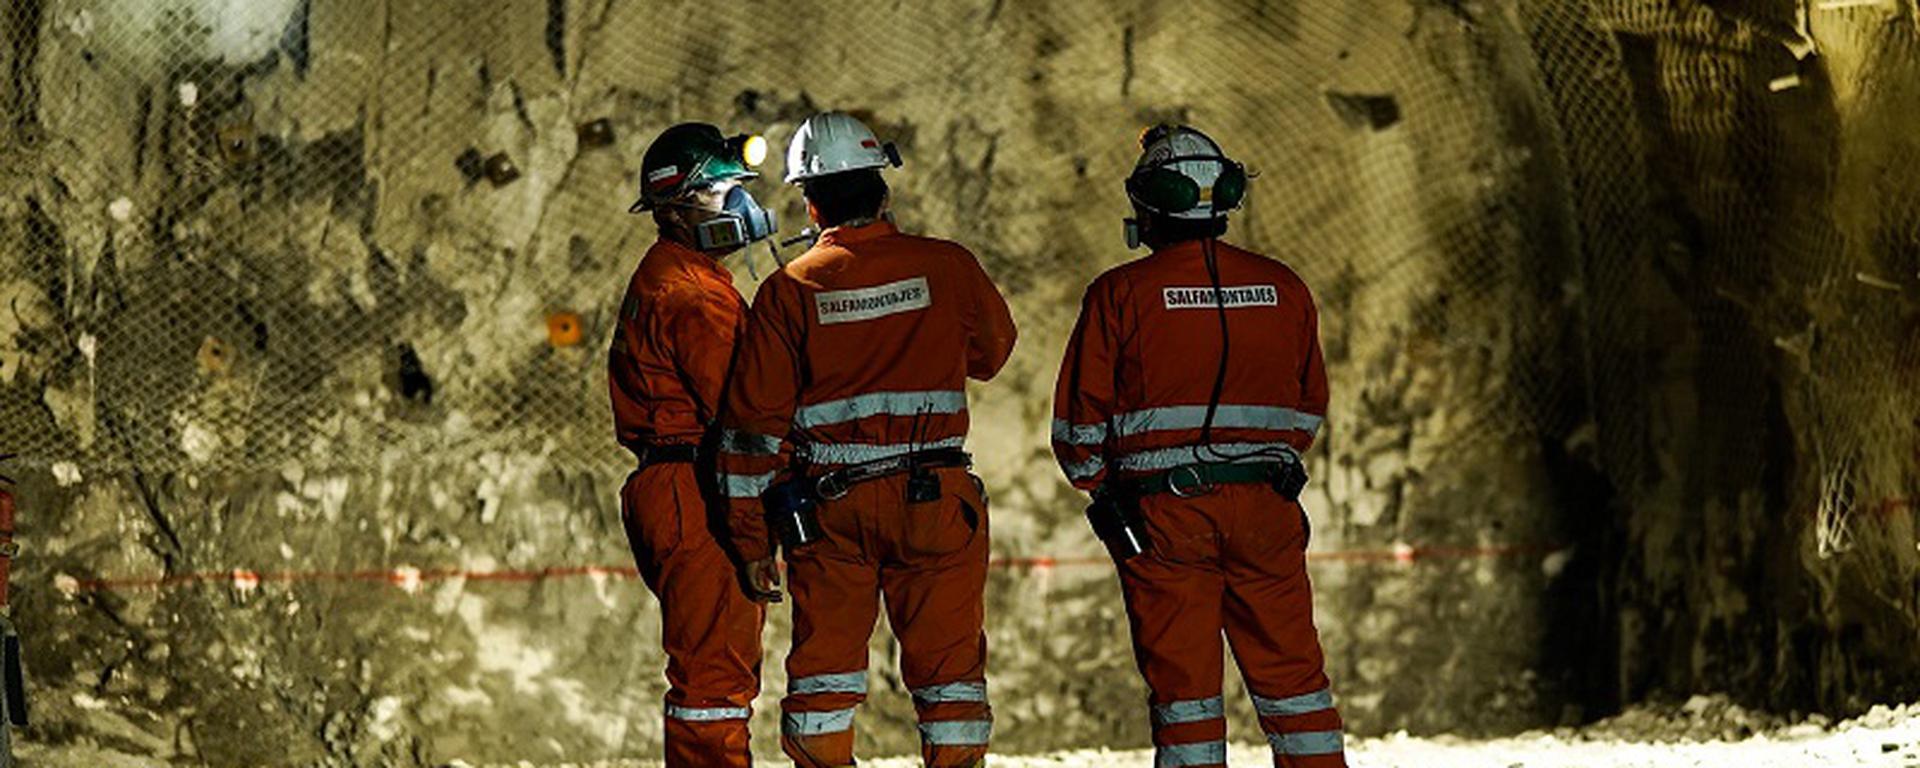 Perú sube del puesto 42 al 34 en el ránking de países más atractivos para la inversión minera